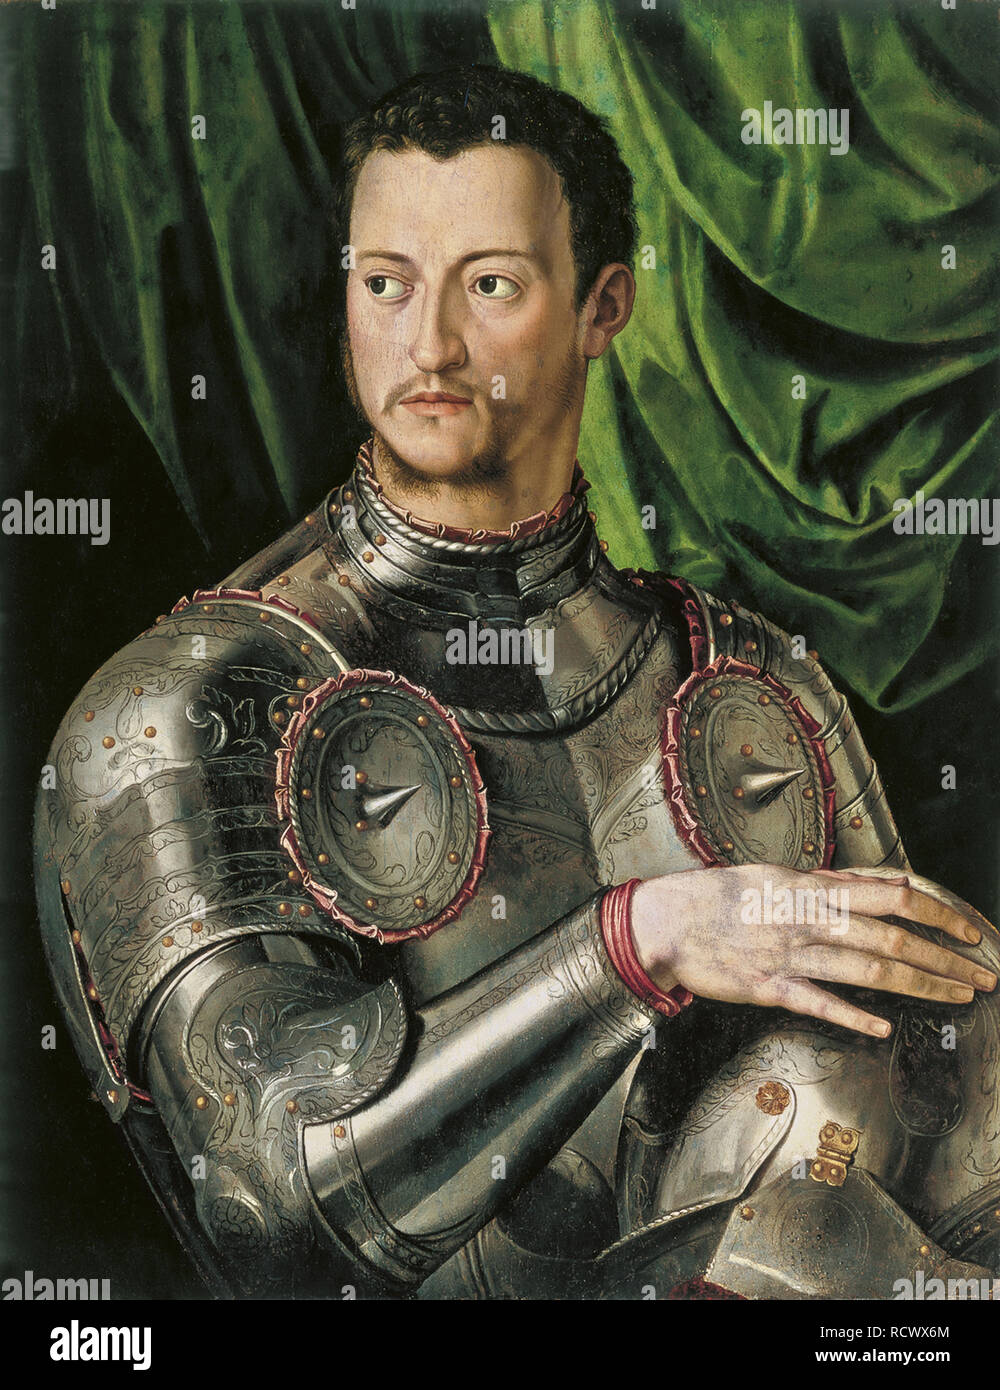 Portrait von Großherzog der Toskana Cosimo I. de' Medici (1519-1574) in der Rüstung. Museum: Museo Thyssen-Bornemisza Sammlungen. Autor: Bronzino. Stockfoto